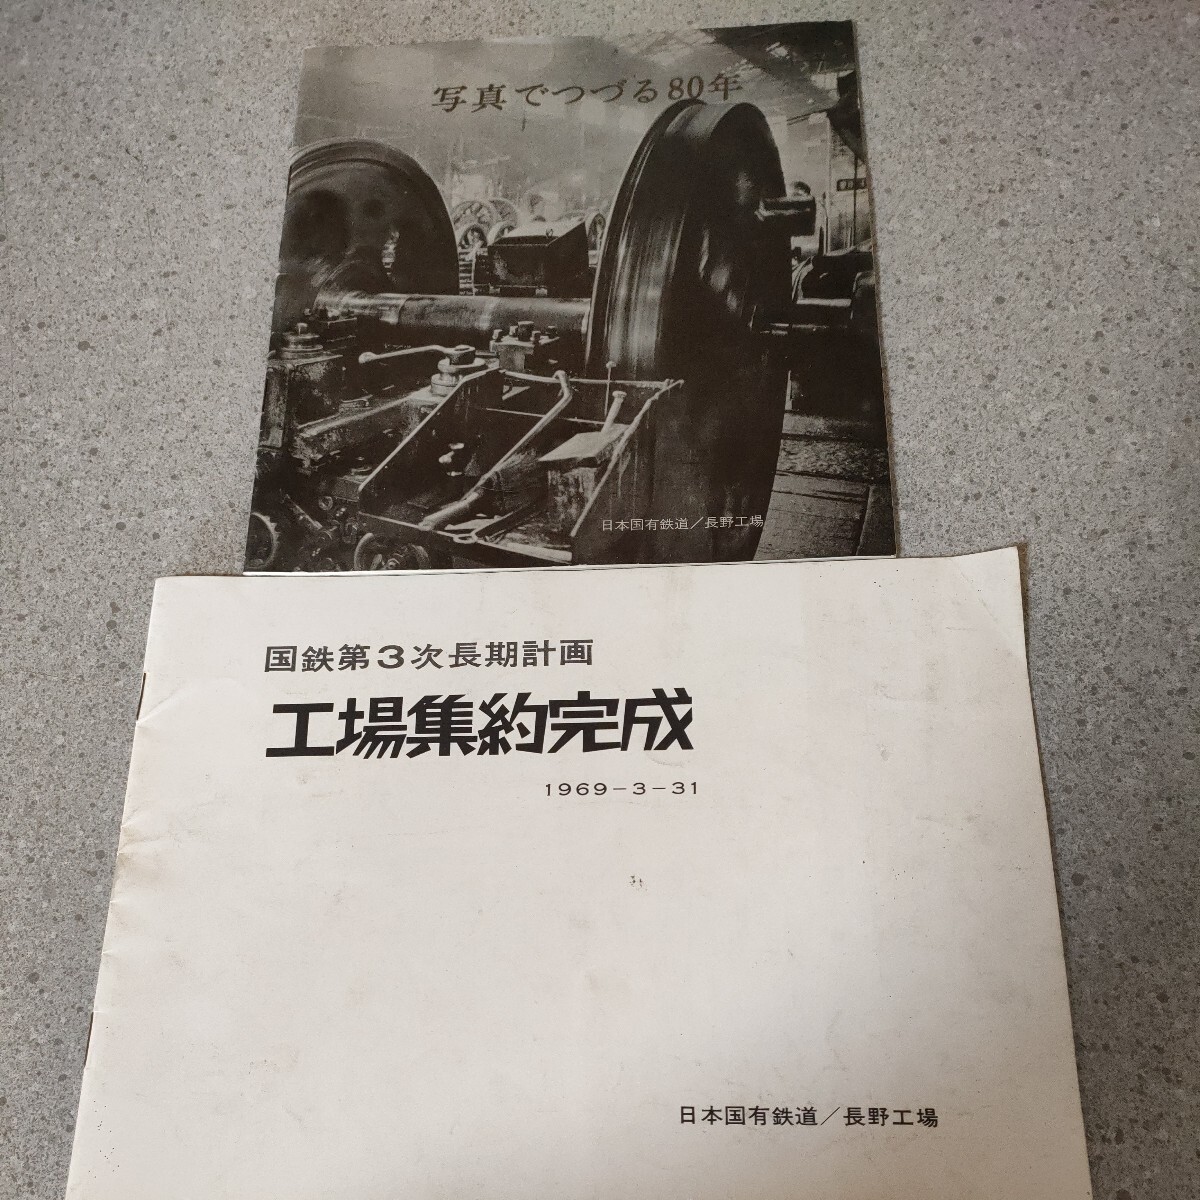 日本国有鉄道 長野工場 冊子 2冊セット 写真でつづる80年 国鉄第3次長期計画 工場集約完成 1969-3-31写真多数 資料 パンフ 昭和44,45年 oa1_画像1